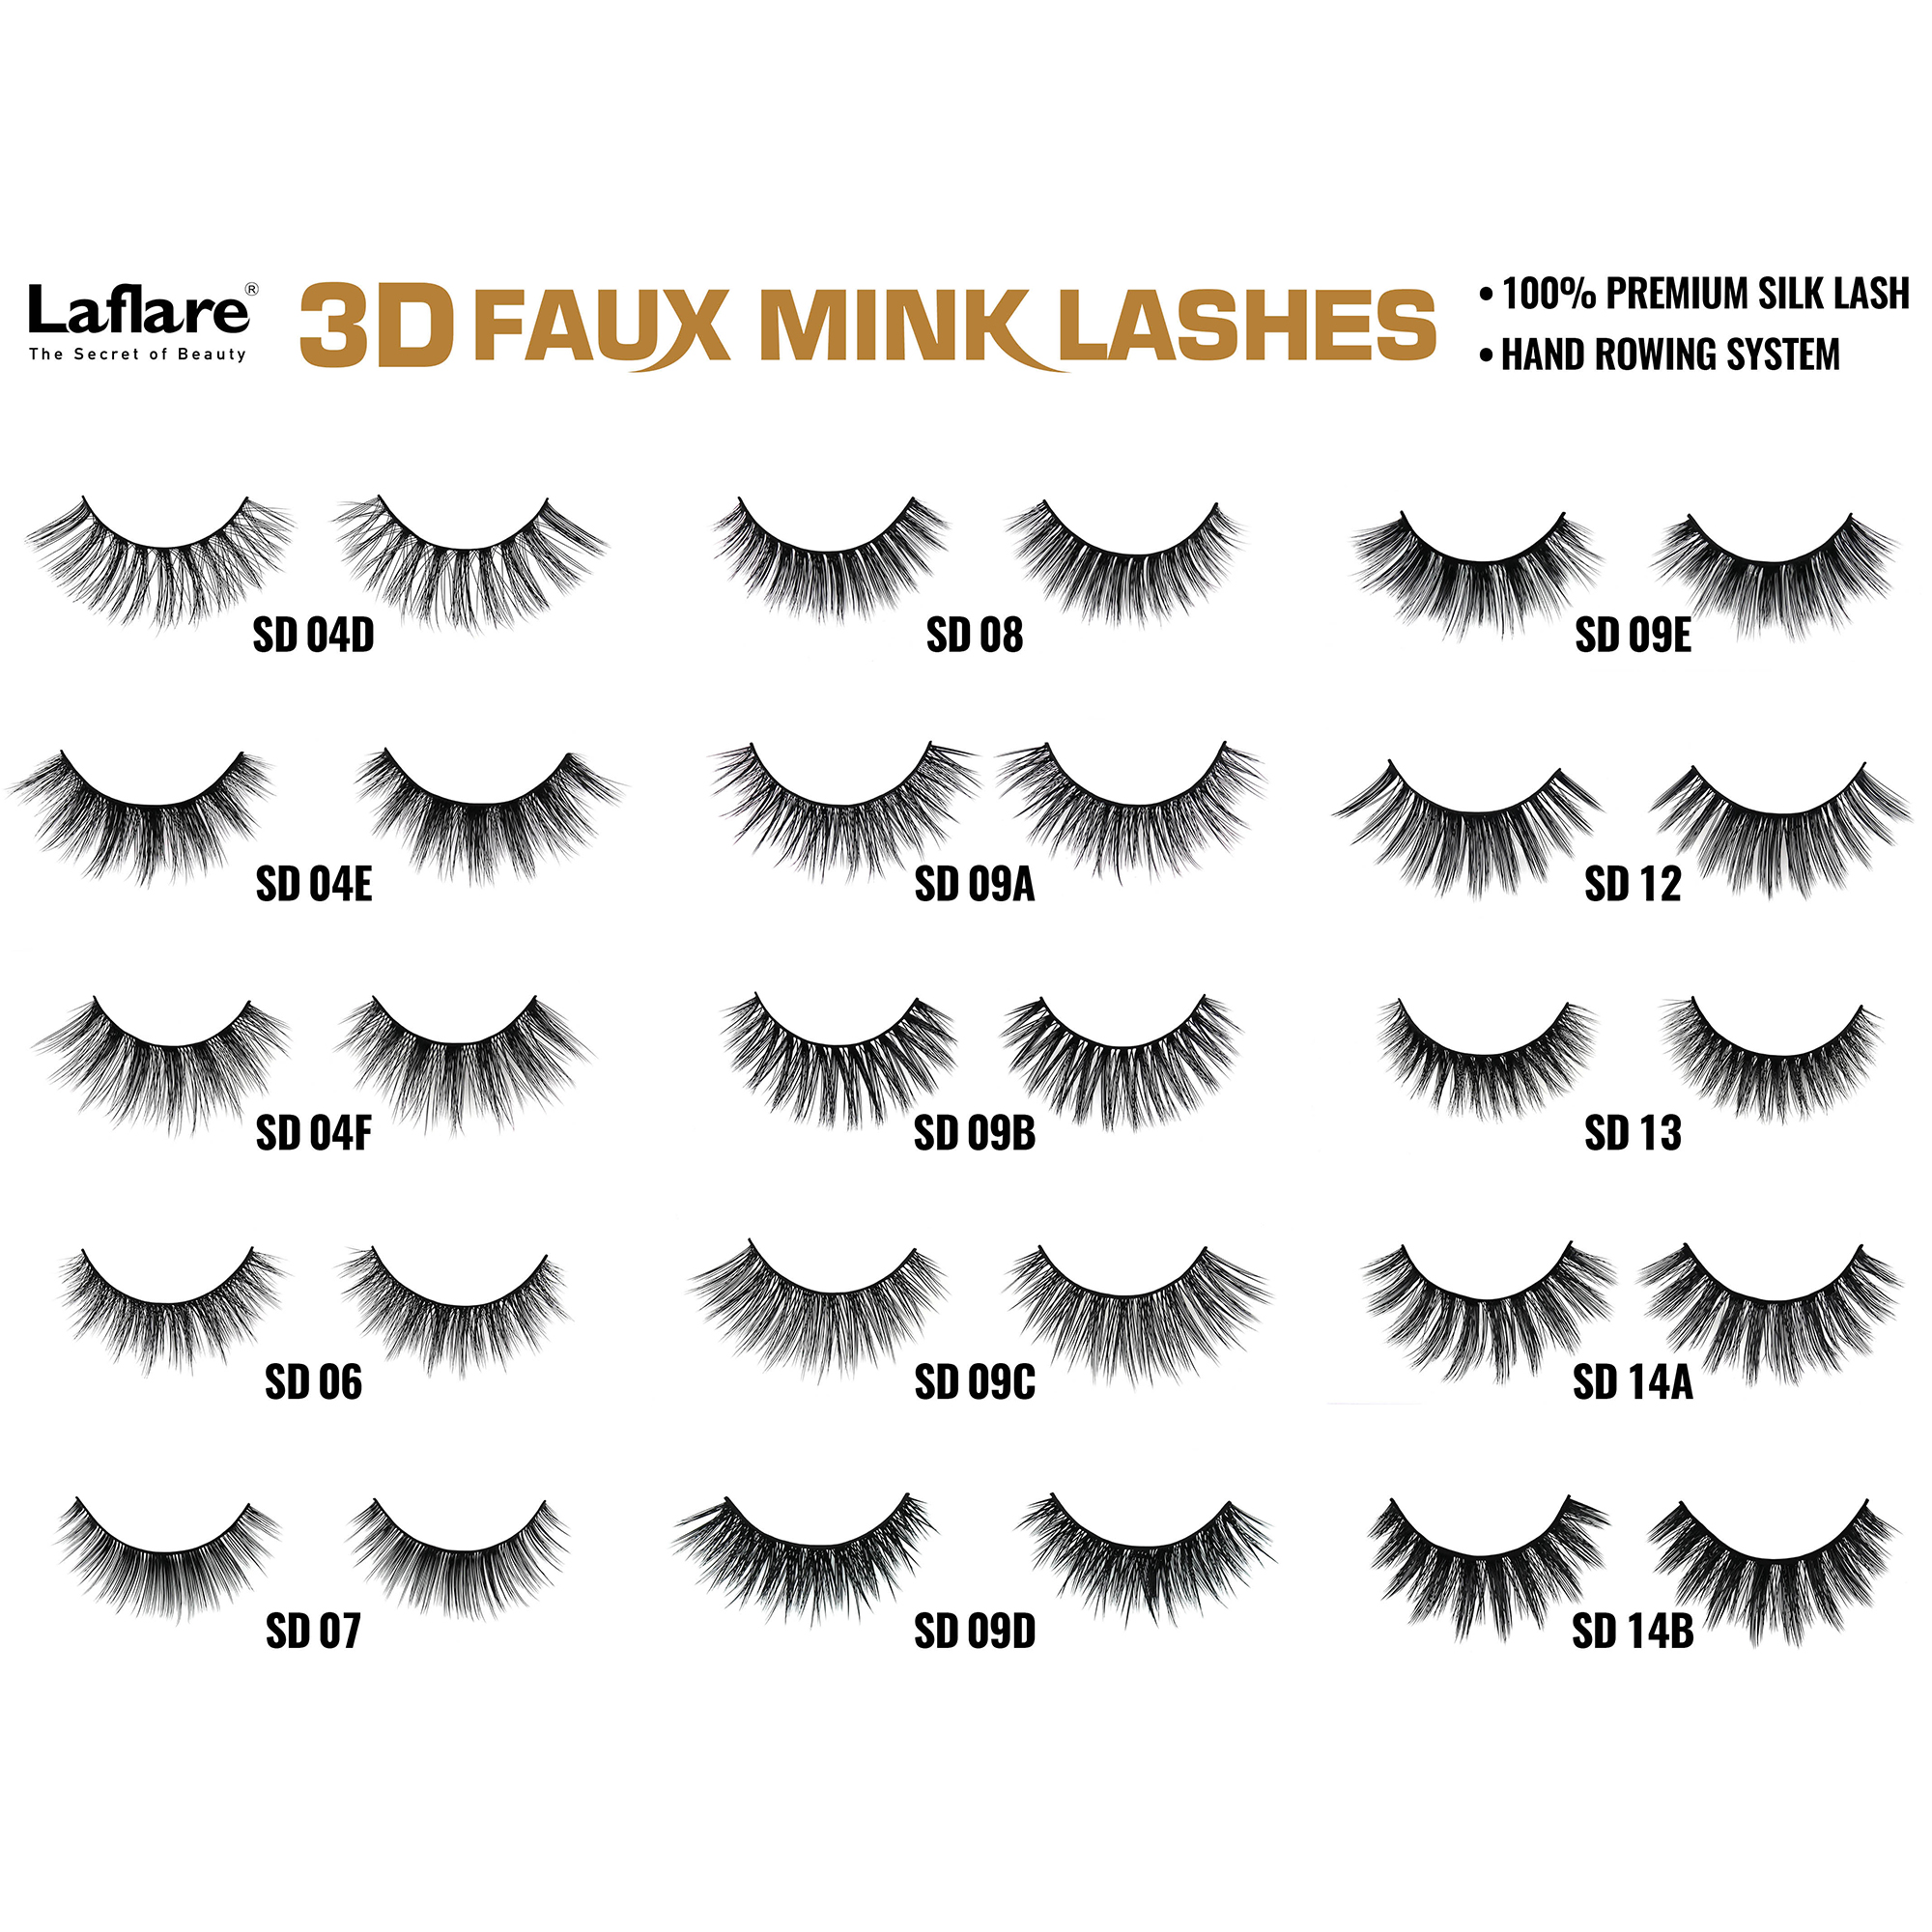 LAFLARE 3d Faux Mink Lashes - SD24H